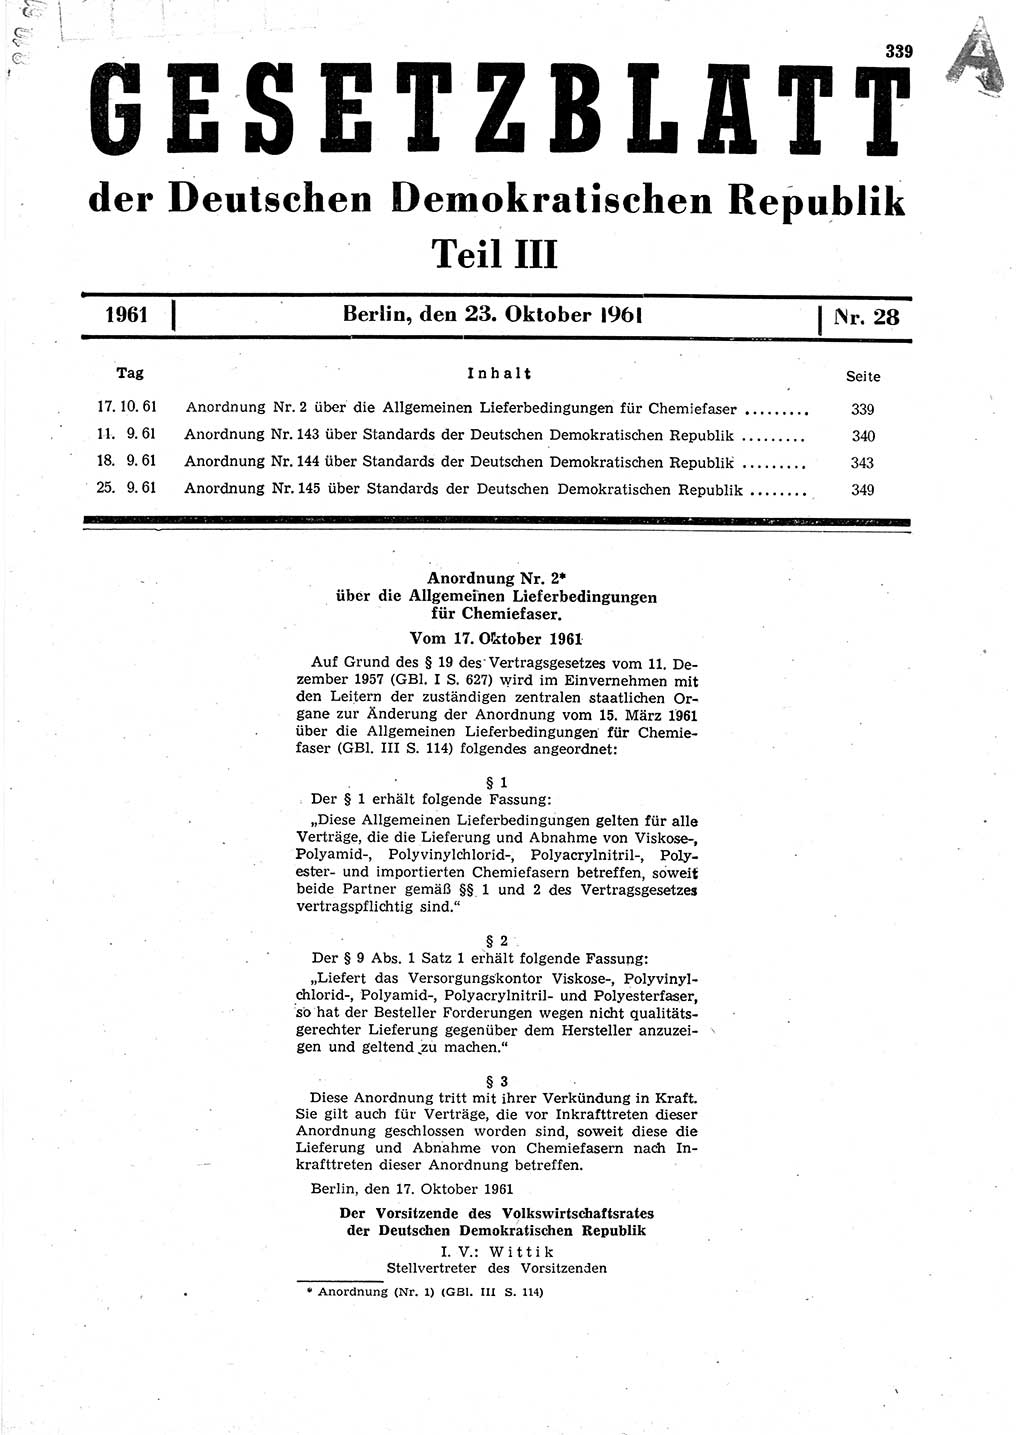 Gesetzblatt (GBl.) der Deutschen Demokratischen Republik (DDR) Teil ⅠⅠⅠ 1961, Seite 339 (GBl. DDR ⅠⅠⅠ 1961, S. 339)